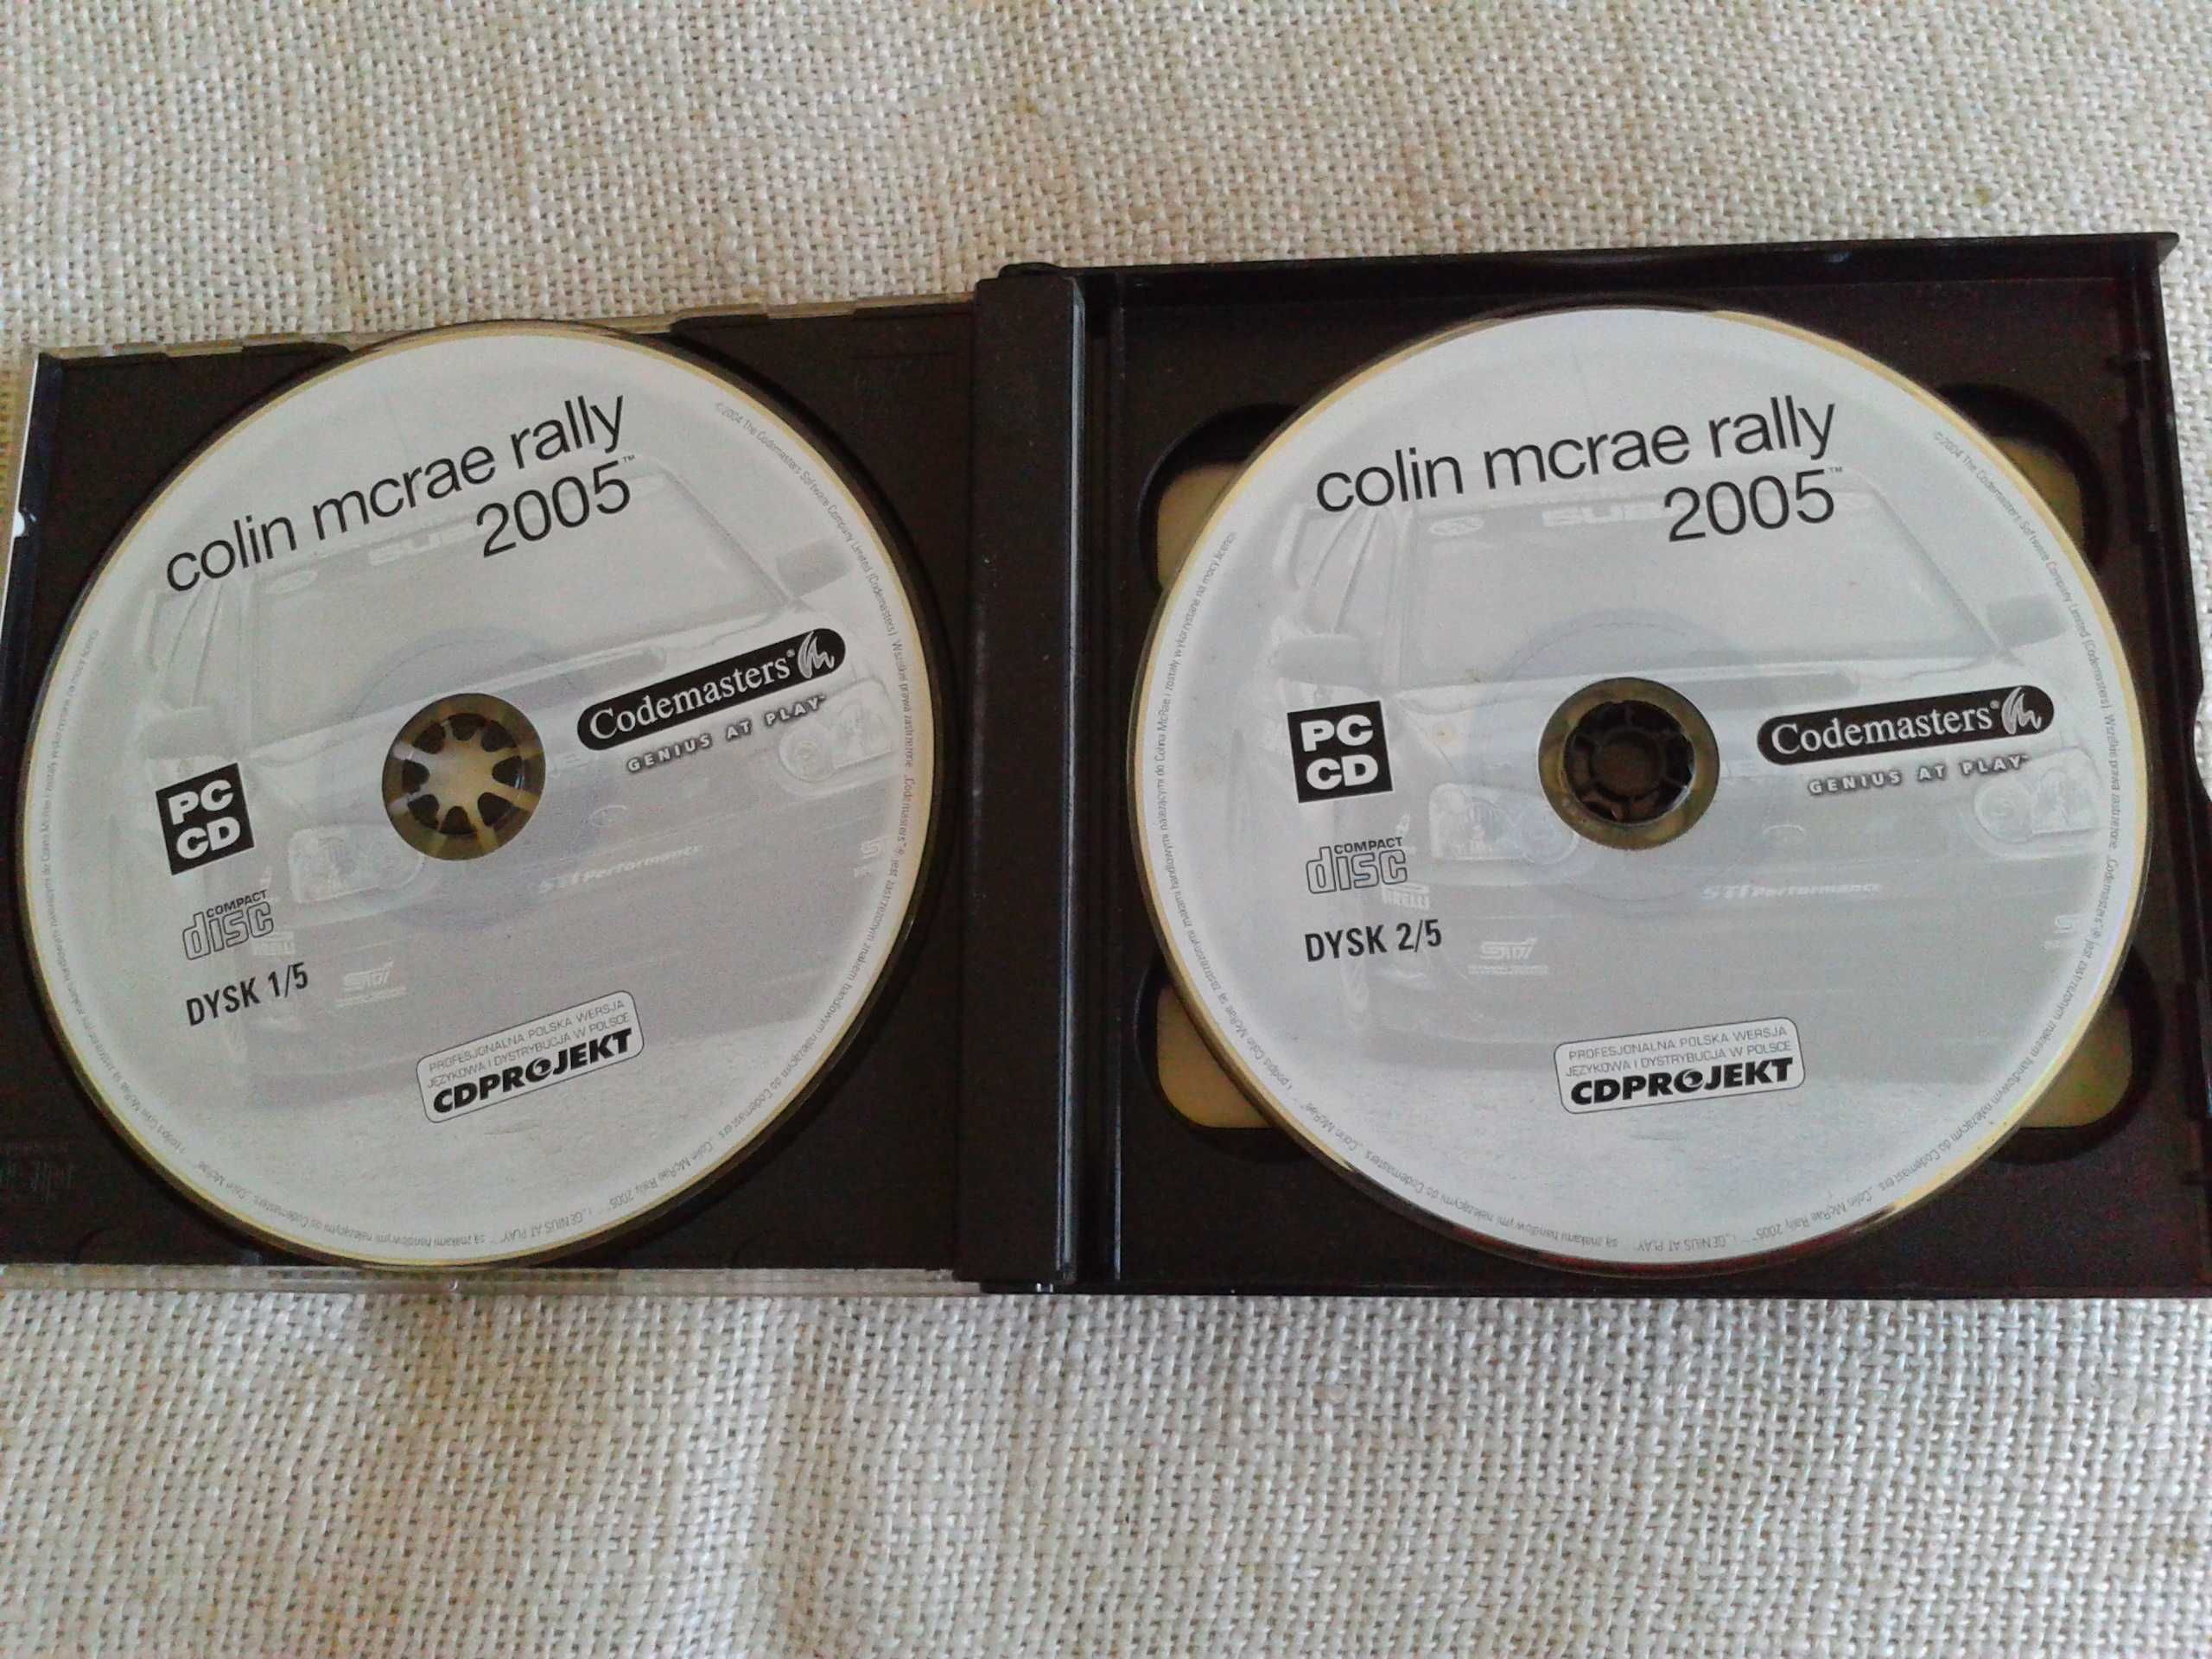 Colin Mcrae Rally 2005 PC